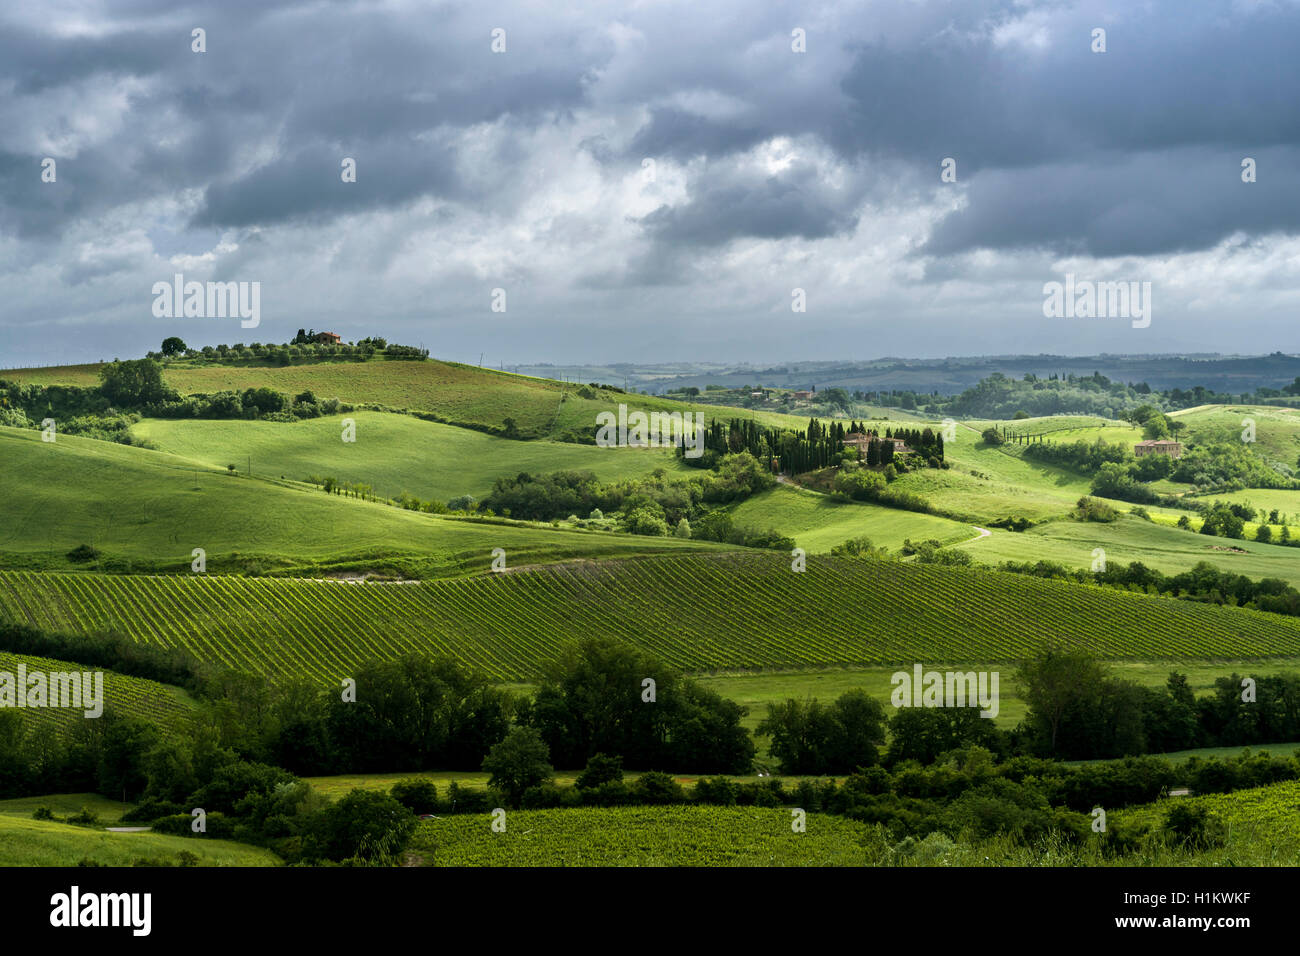 Paysage typique toscan vert dans le Val d'Orcia, avec des collines, champs, arbres, vignes, oliveraies et ciel nuageux Banque D'Images